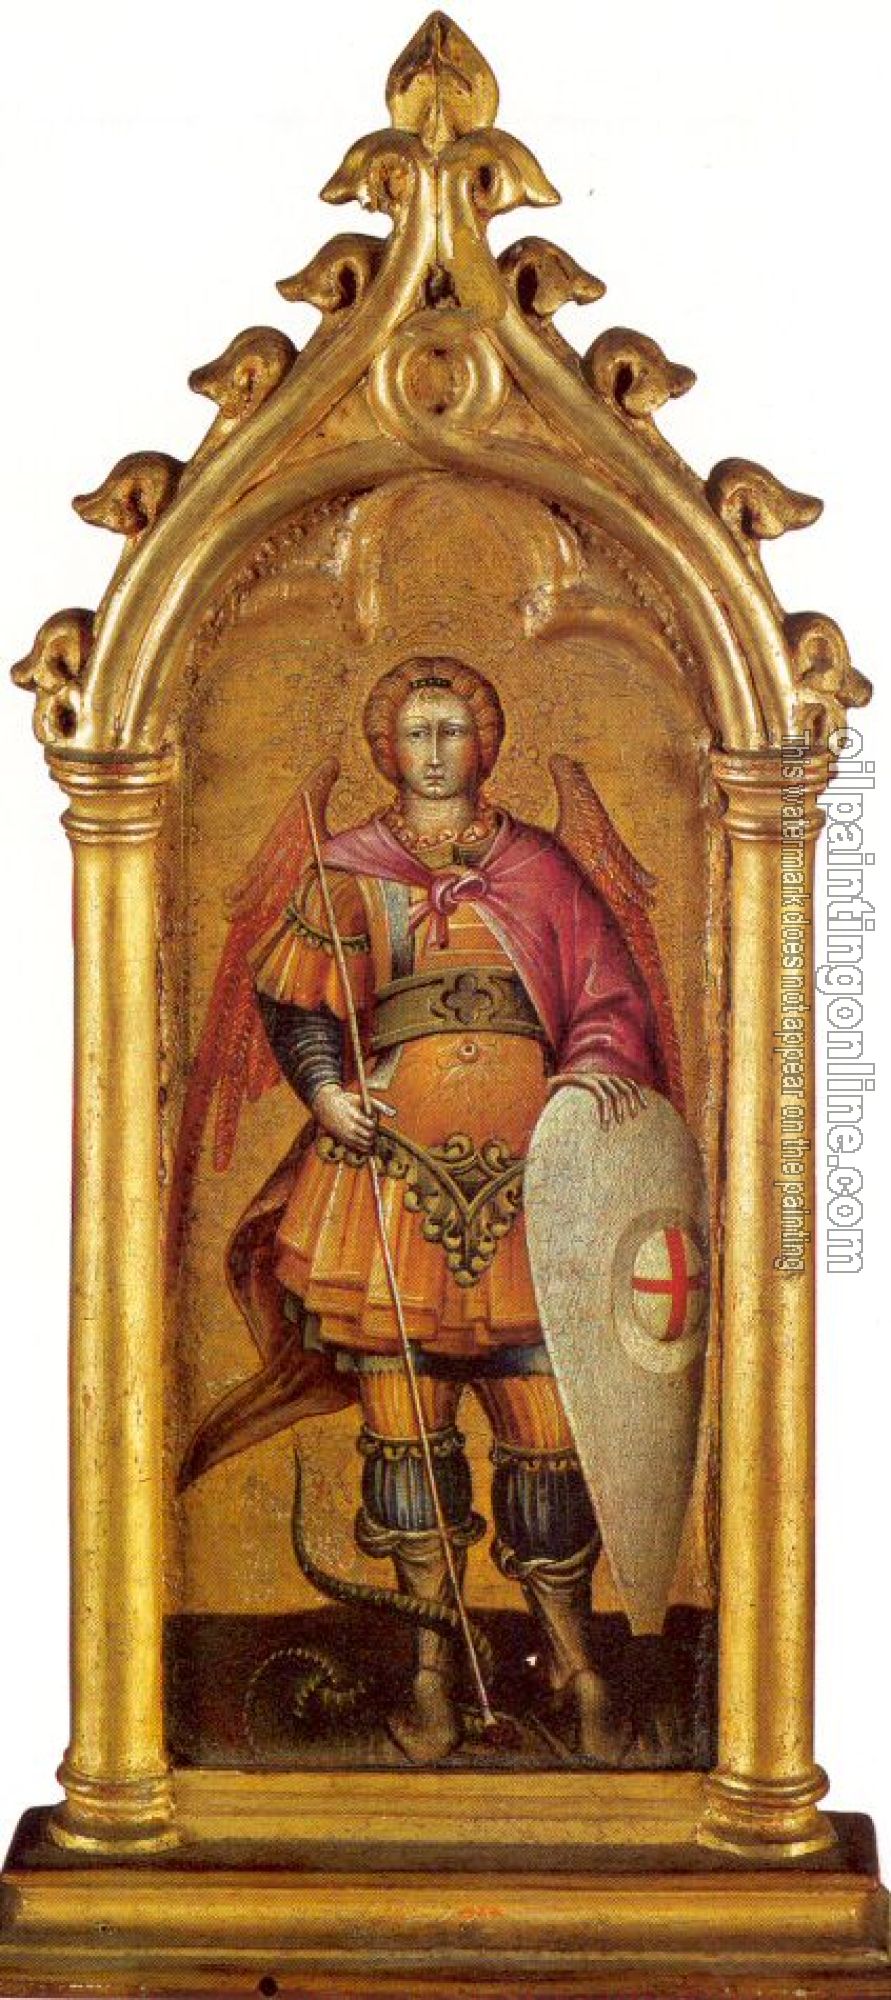 Paolo, Giovanni di - The Archangel Michael